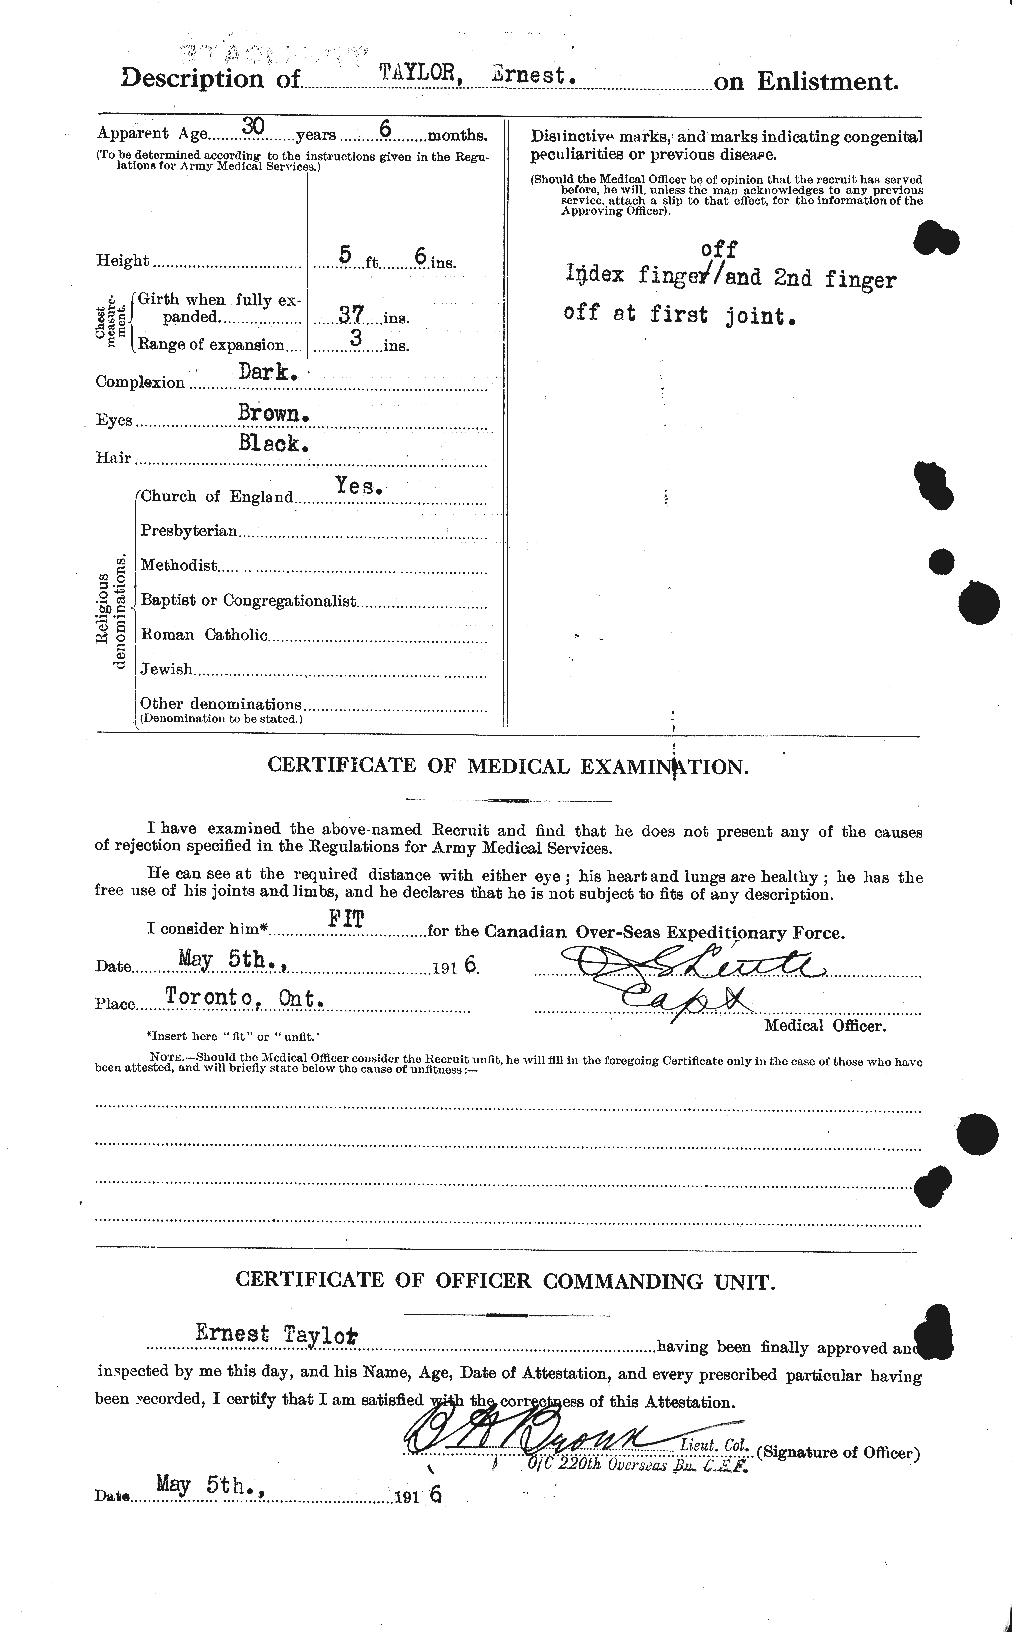 Dossiers du Personnel de la Première Guerre mondiale - CEC 627384b